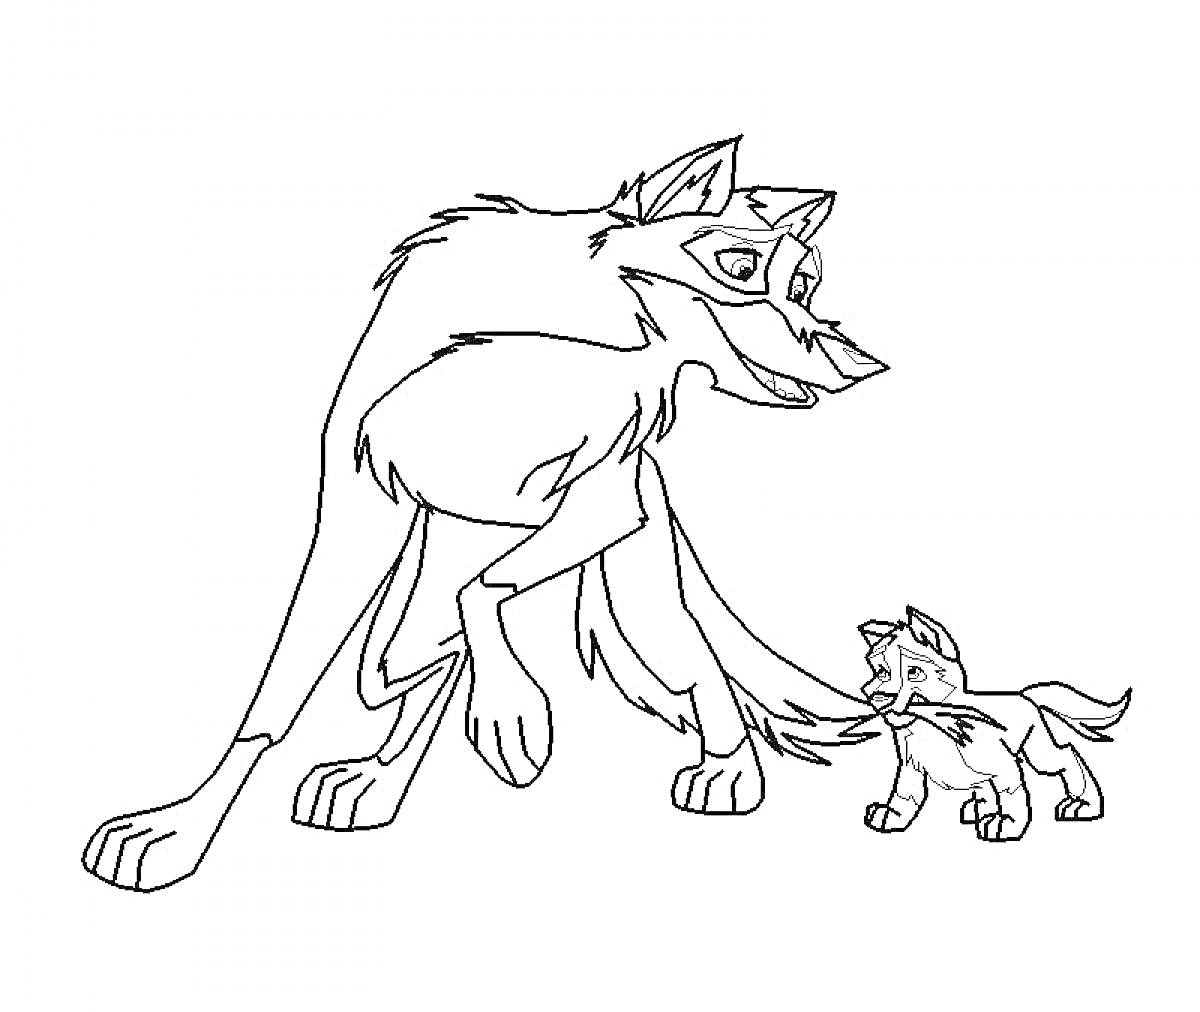 Раскраска Балто и щенок - два персонажа: один взрослый, другой маленький, стоят рядом.